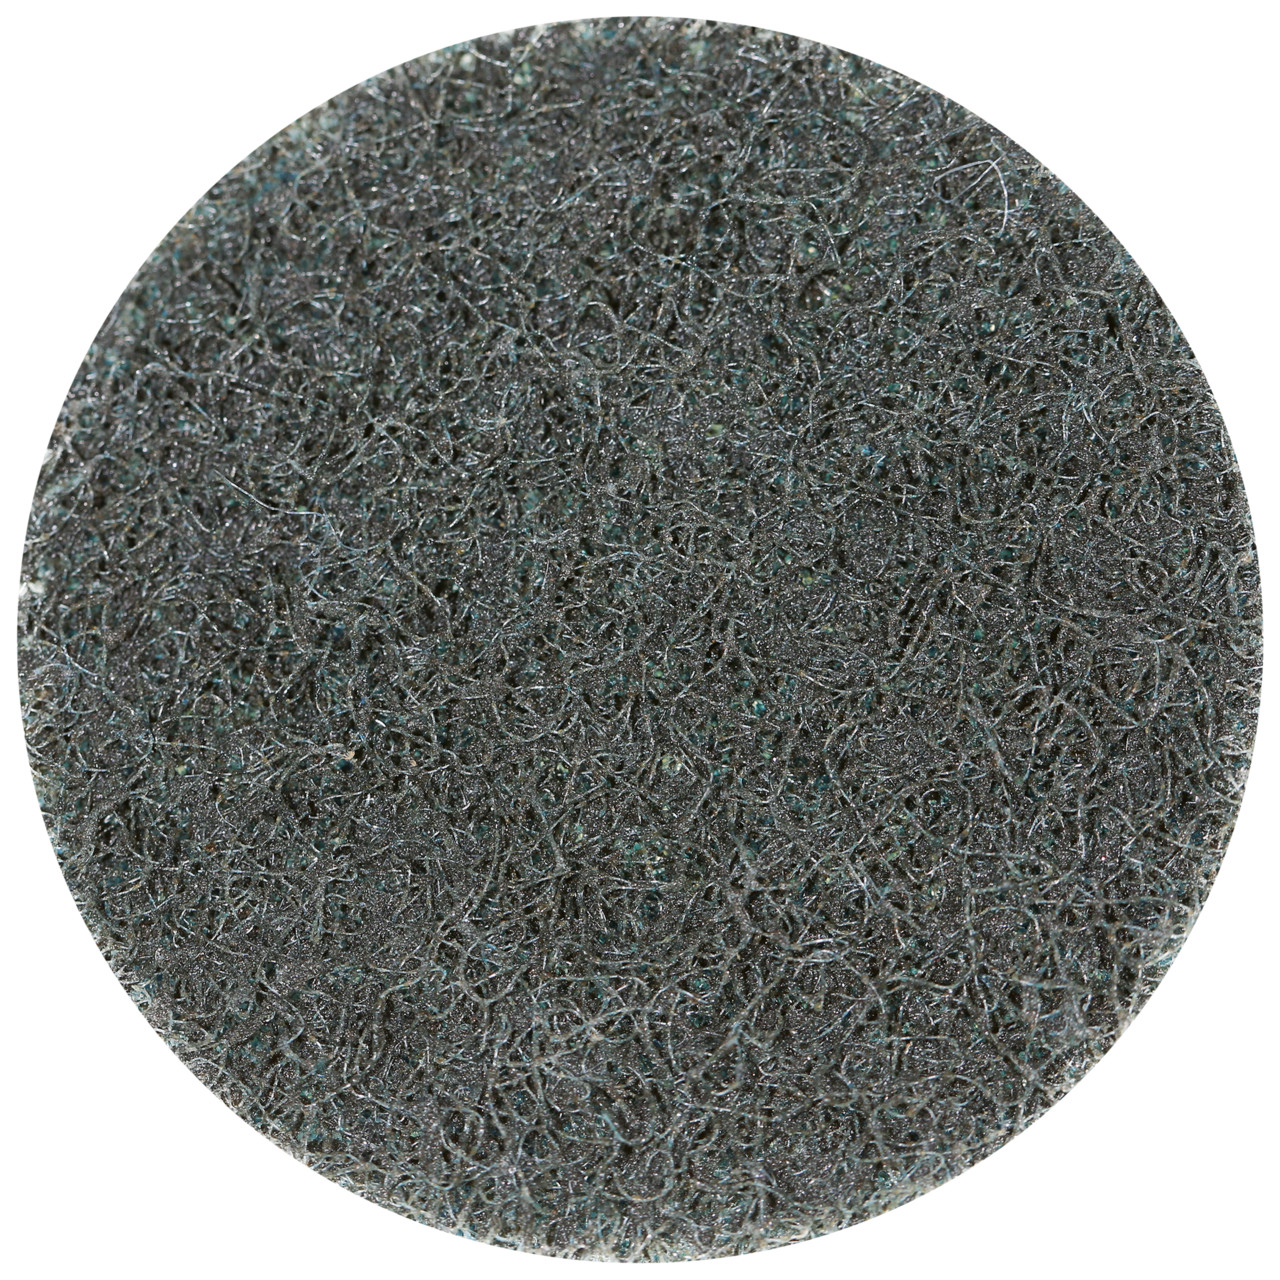 Tyrolit SCM QUICK CHANGE DISC Dimension 50xS Pour l'acier, l'acier inoxydable, les métaux non ferreux, le plastique et le bois, GROB, Forme : QDISC, art. 112589